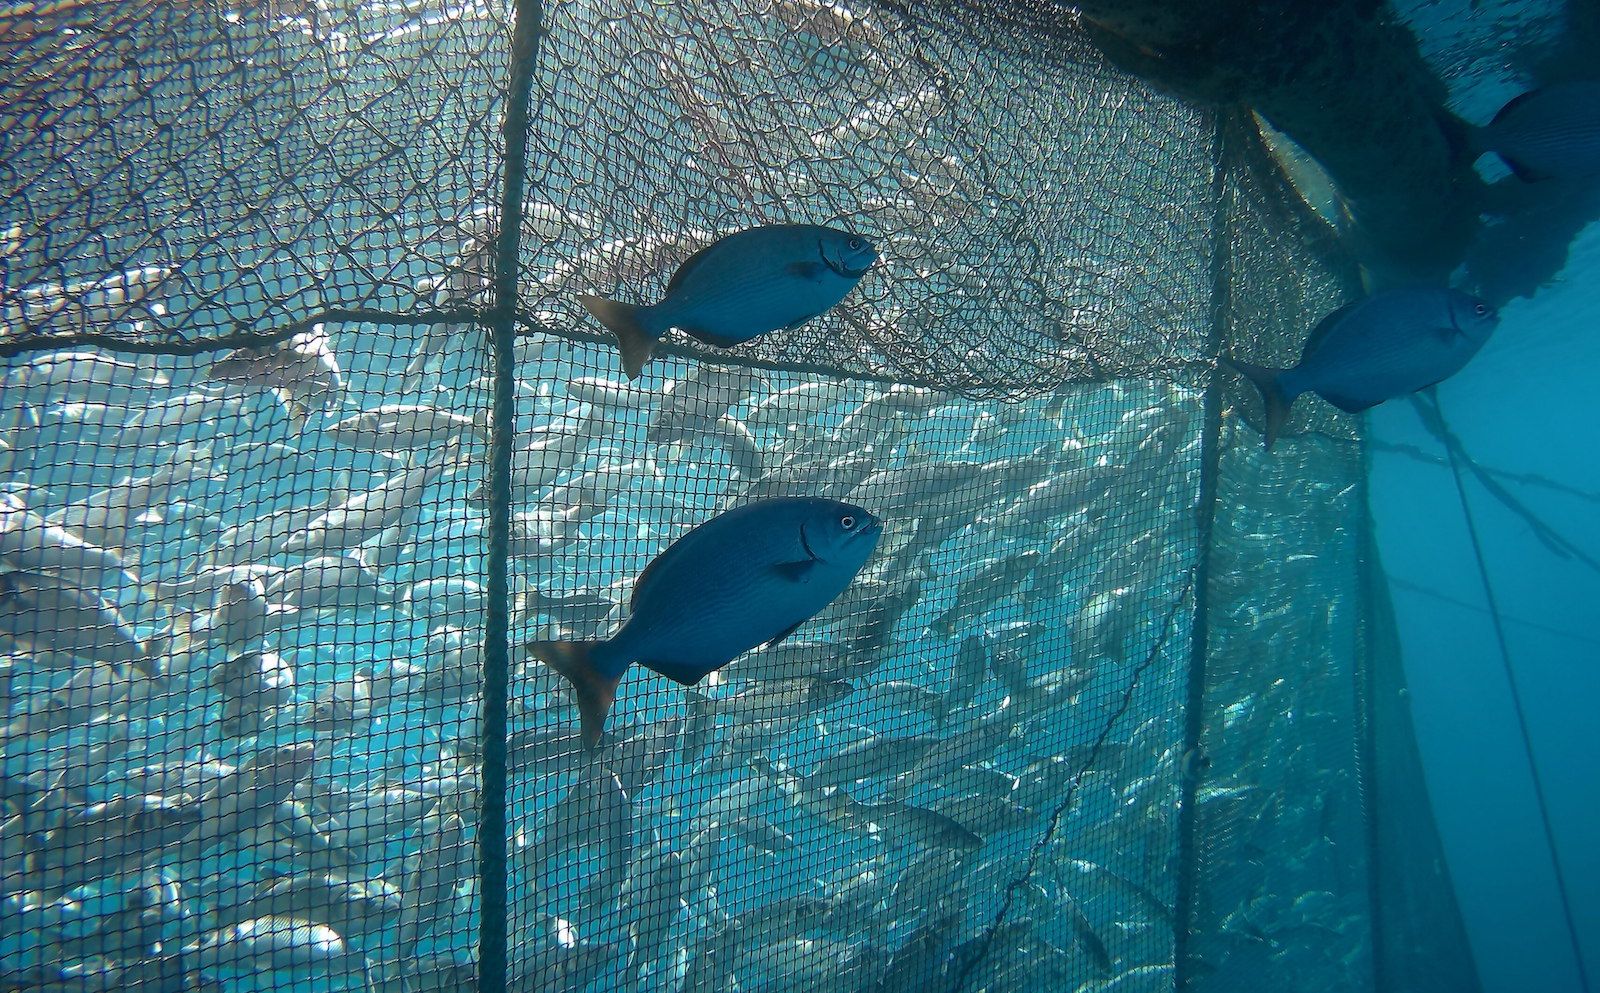 Imagen subacuática de especies de peces salvajes, junto a peces cultivados, en una de las granjas acuícolas participantes en el proyecto de investigación de la CEU UCH.